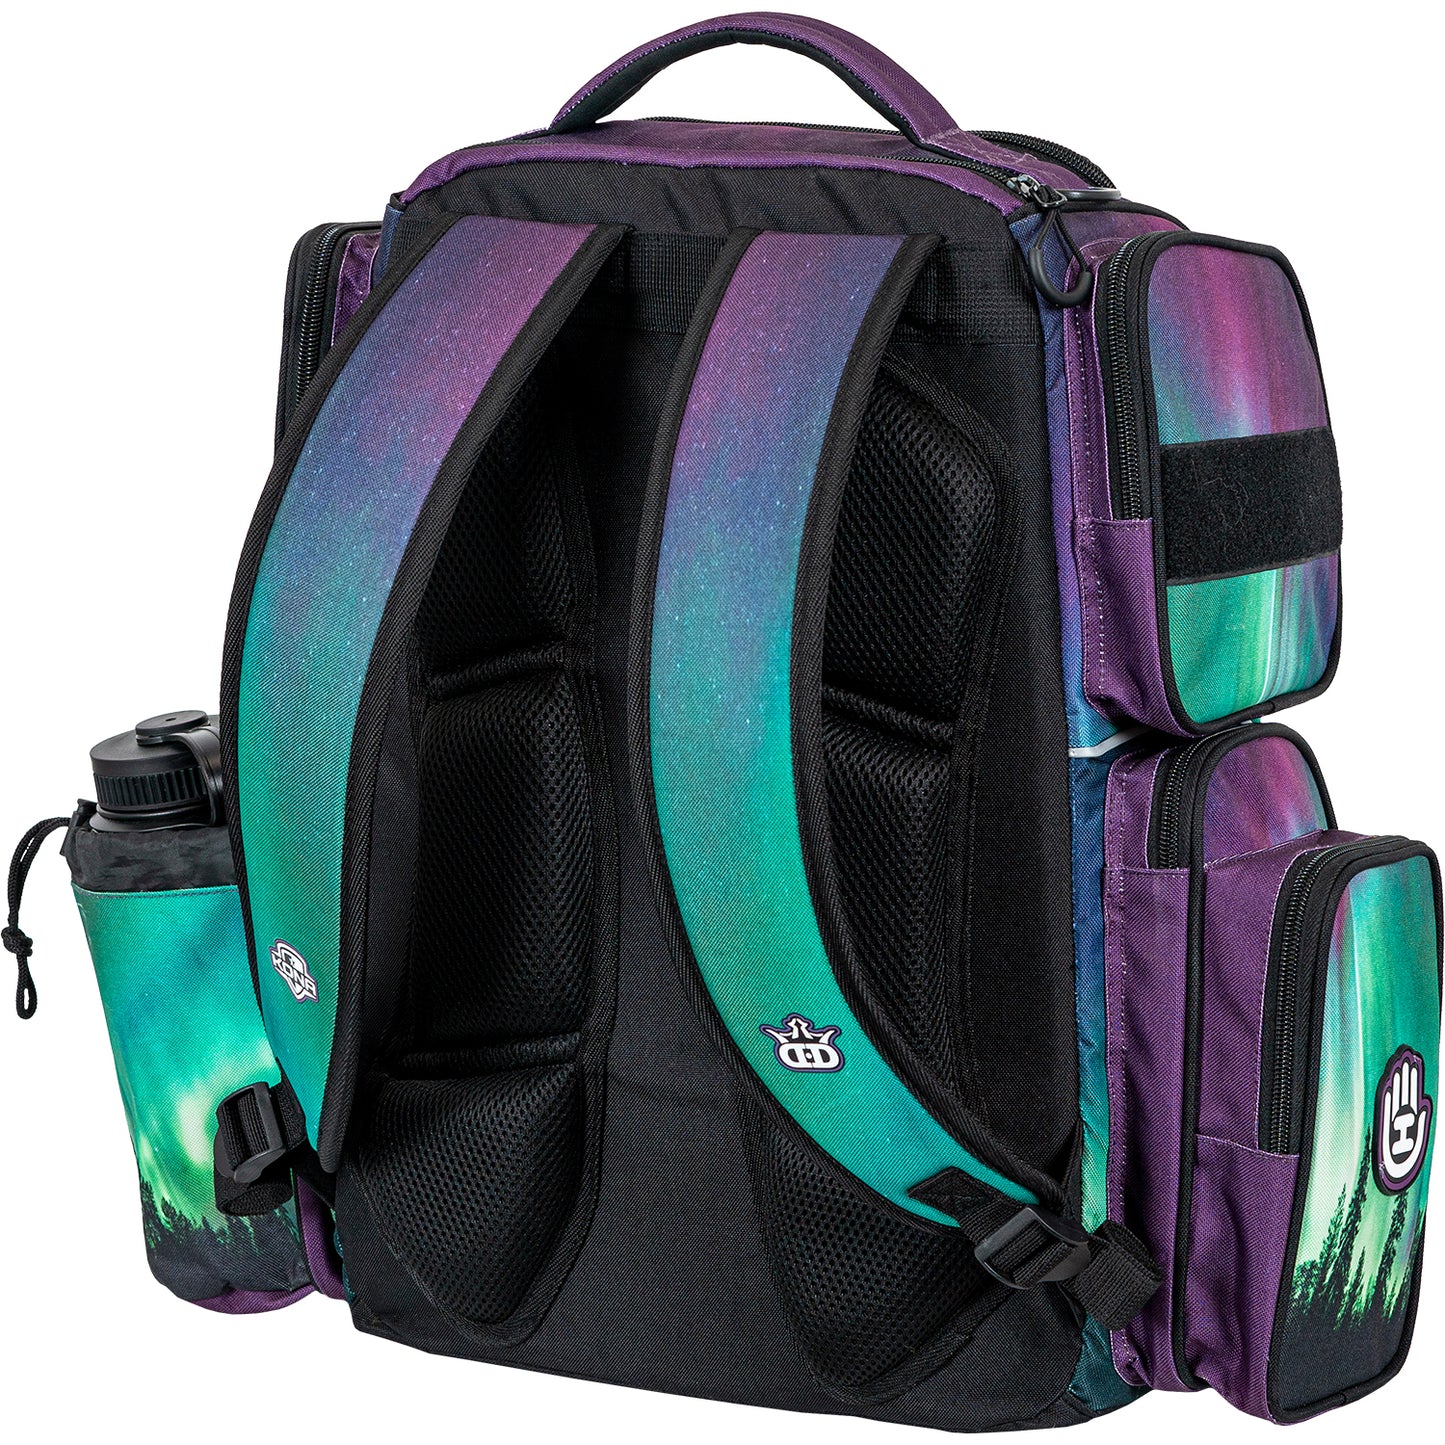 Handeye Supply Co Mission Rig Backpack Kona Panis Team Series